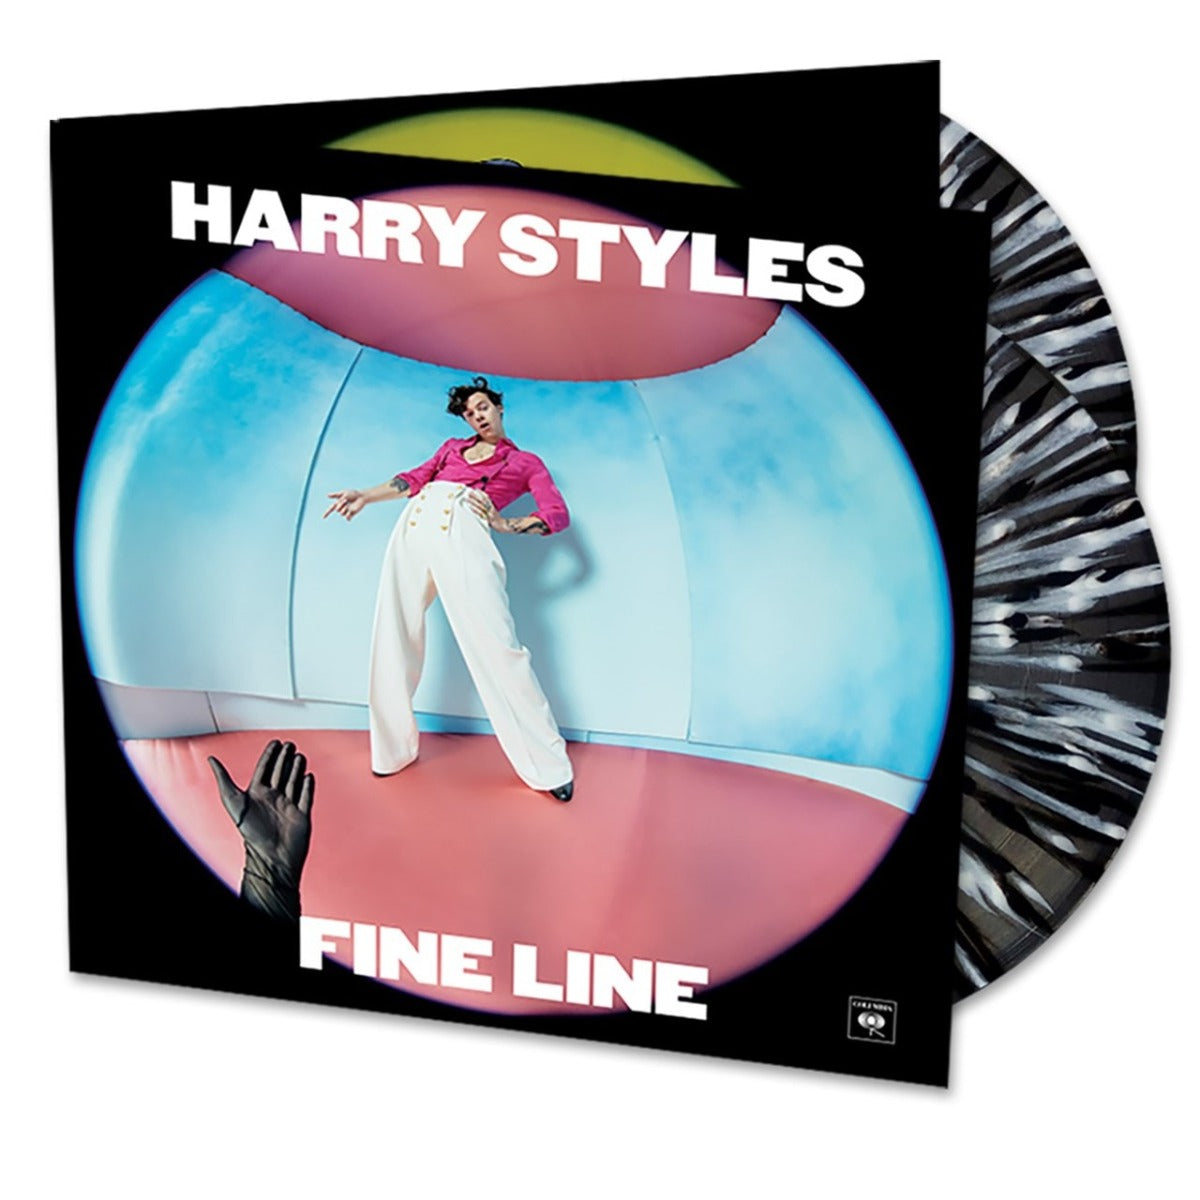 Harry Styles Fine Line (Limited Edition, Black & White Splatter Vinyl, Gatefold Cover) (2 Lp's) Vinyl - Paladin Vinyl